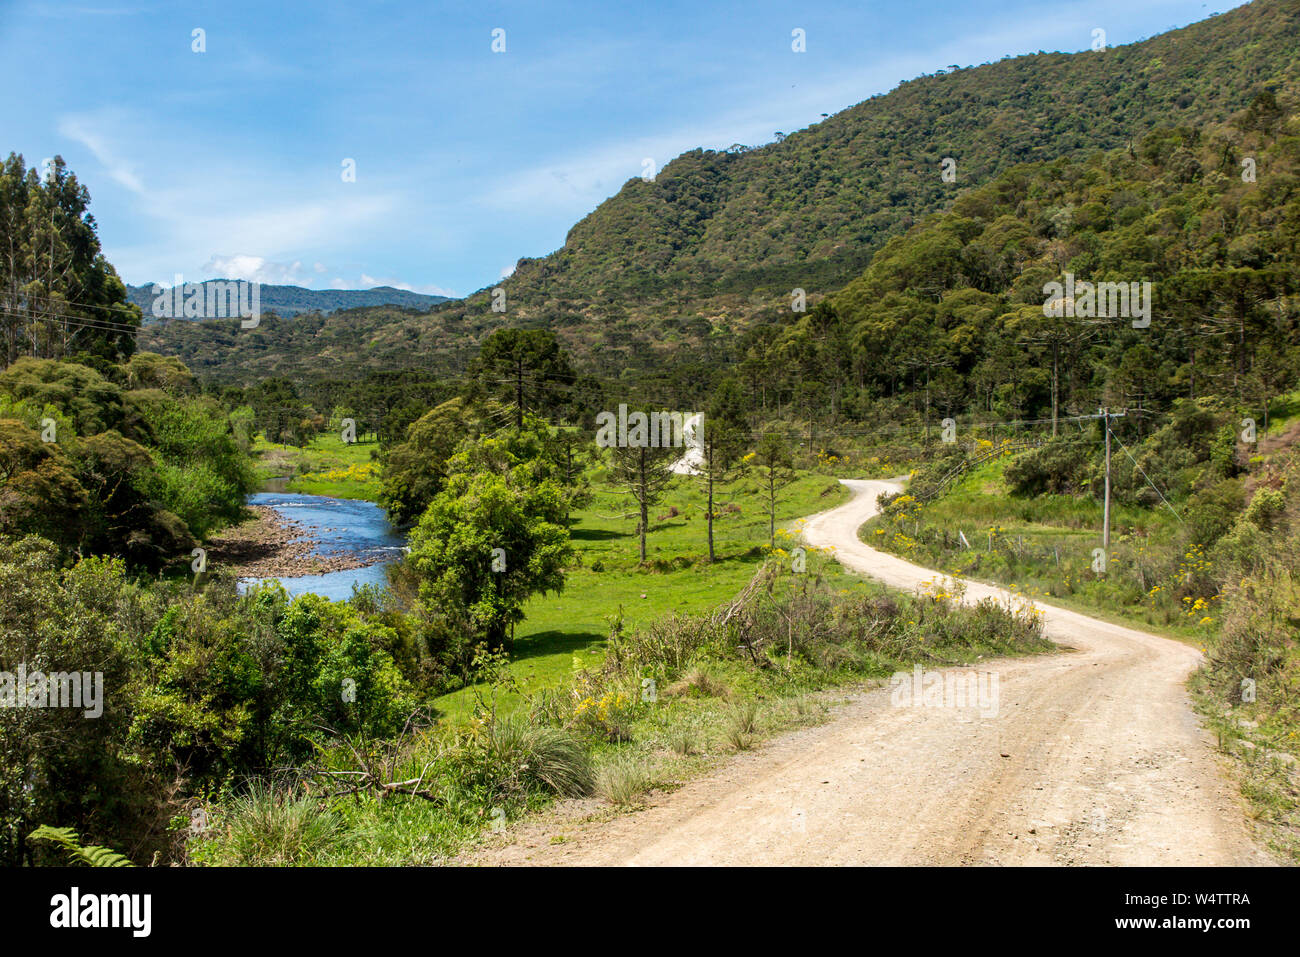 Strada sterrata con un fiume e foresta accanto e le montagne sullo sfondo blu cielo con poche nuvole Foto Stock